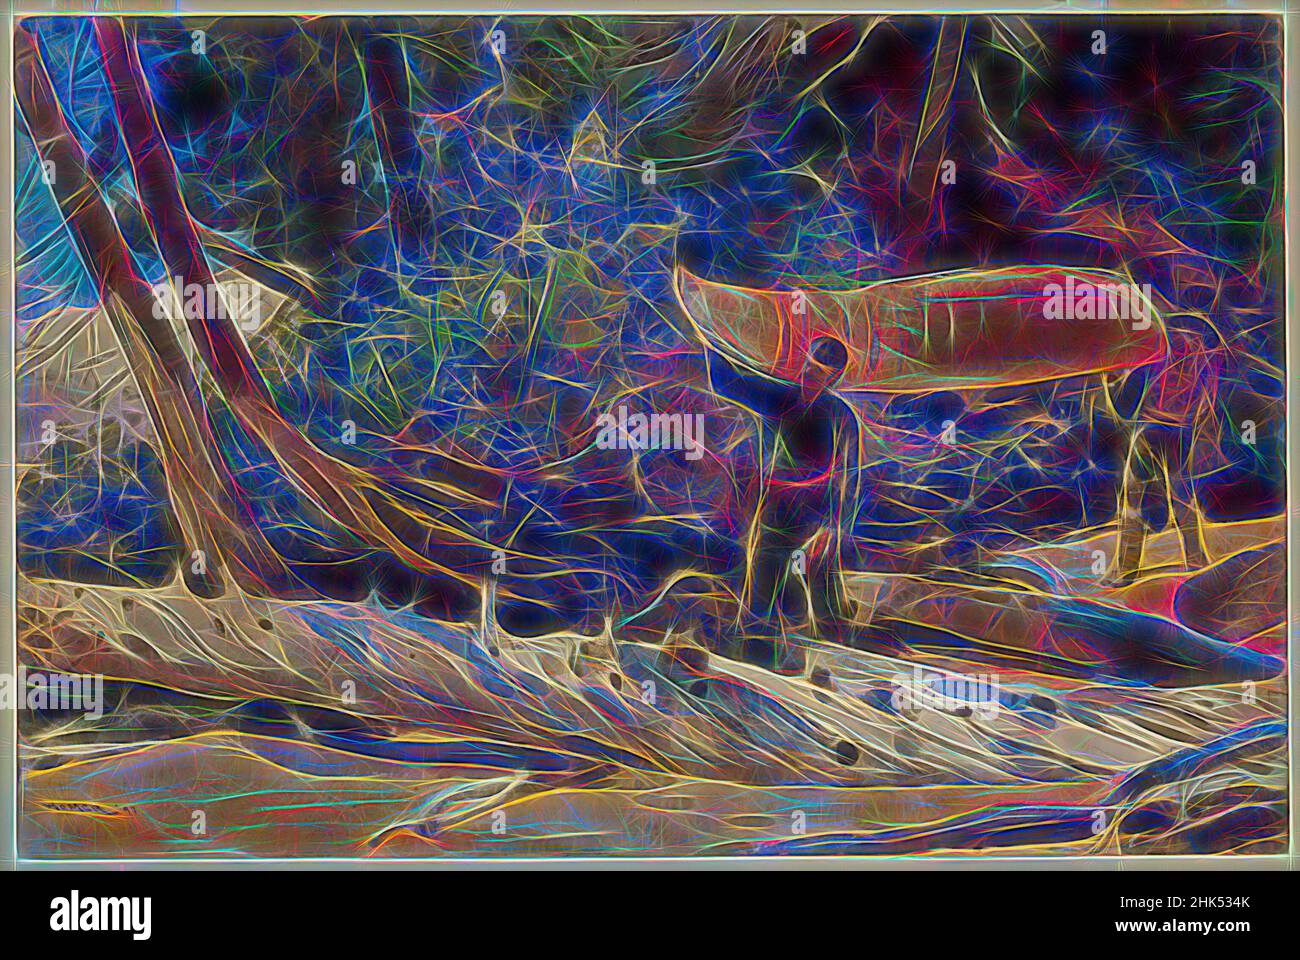 Inspirado por End of the Portage, Winslow Homer, American, 1836-1910, acuarela transparente y opaca con dibujo bajo grafito sobre papel de paloma blanco, moderadamente grueso, moderadamente texturizado, 1897, 14 x 21 in., 35,6 x 53,3 cm, 1897, 19th Century, American, Canoe, Árbol caído, gouache, Homero, IMLS, Reimaginado por Artótop. Arte clásico reinventado con un toque moderno. Diseño de brillo cálido y alegre y luminosidad e radiación de rayos de luz. Fotografía inspirada en el surrealismo y el futurismo, que abarca la energía dinámica de la tecnología moderna, el movimiento, la velocidad y la revolución de la cultura Foto de stock